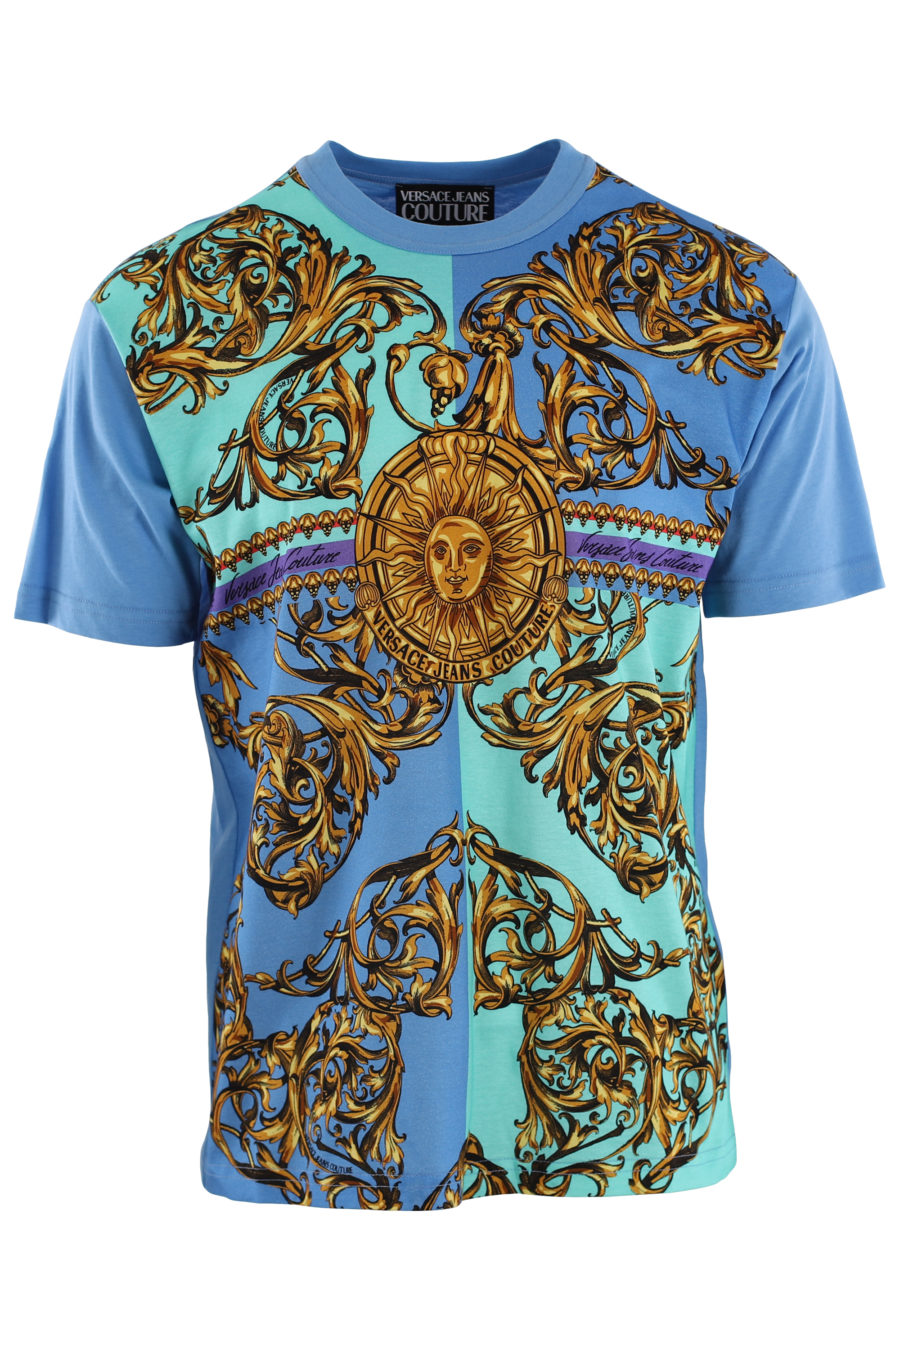 Camiseta azul con estampado barroco "garland sun" - IMG 0415